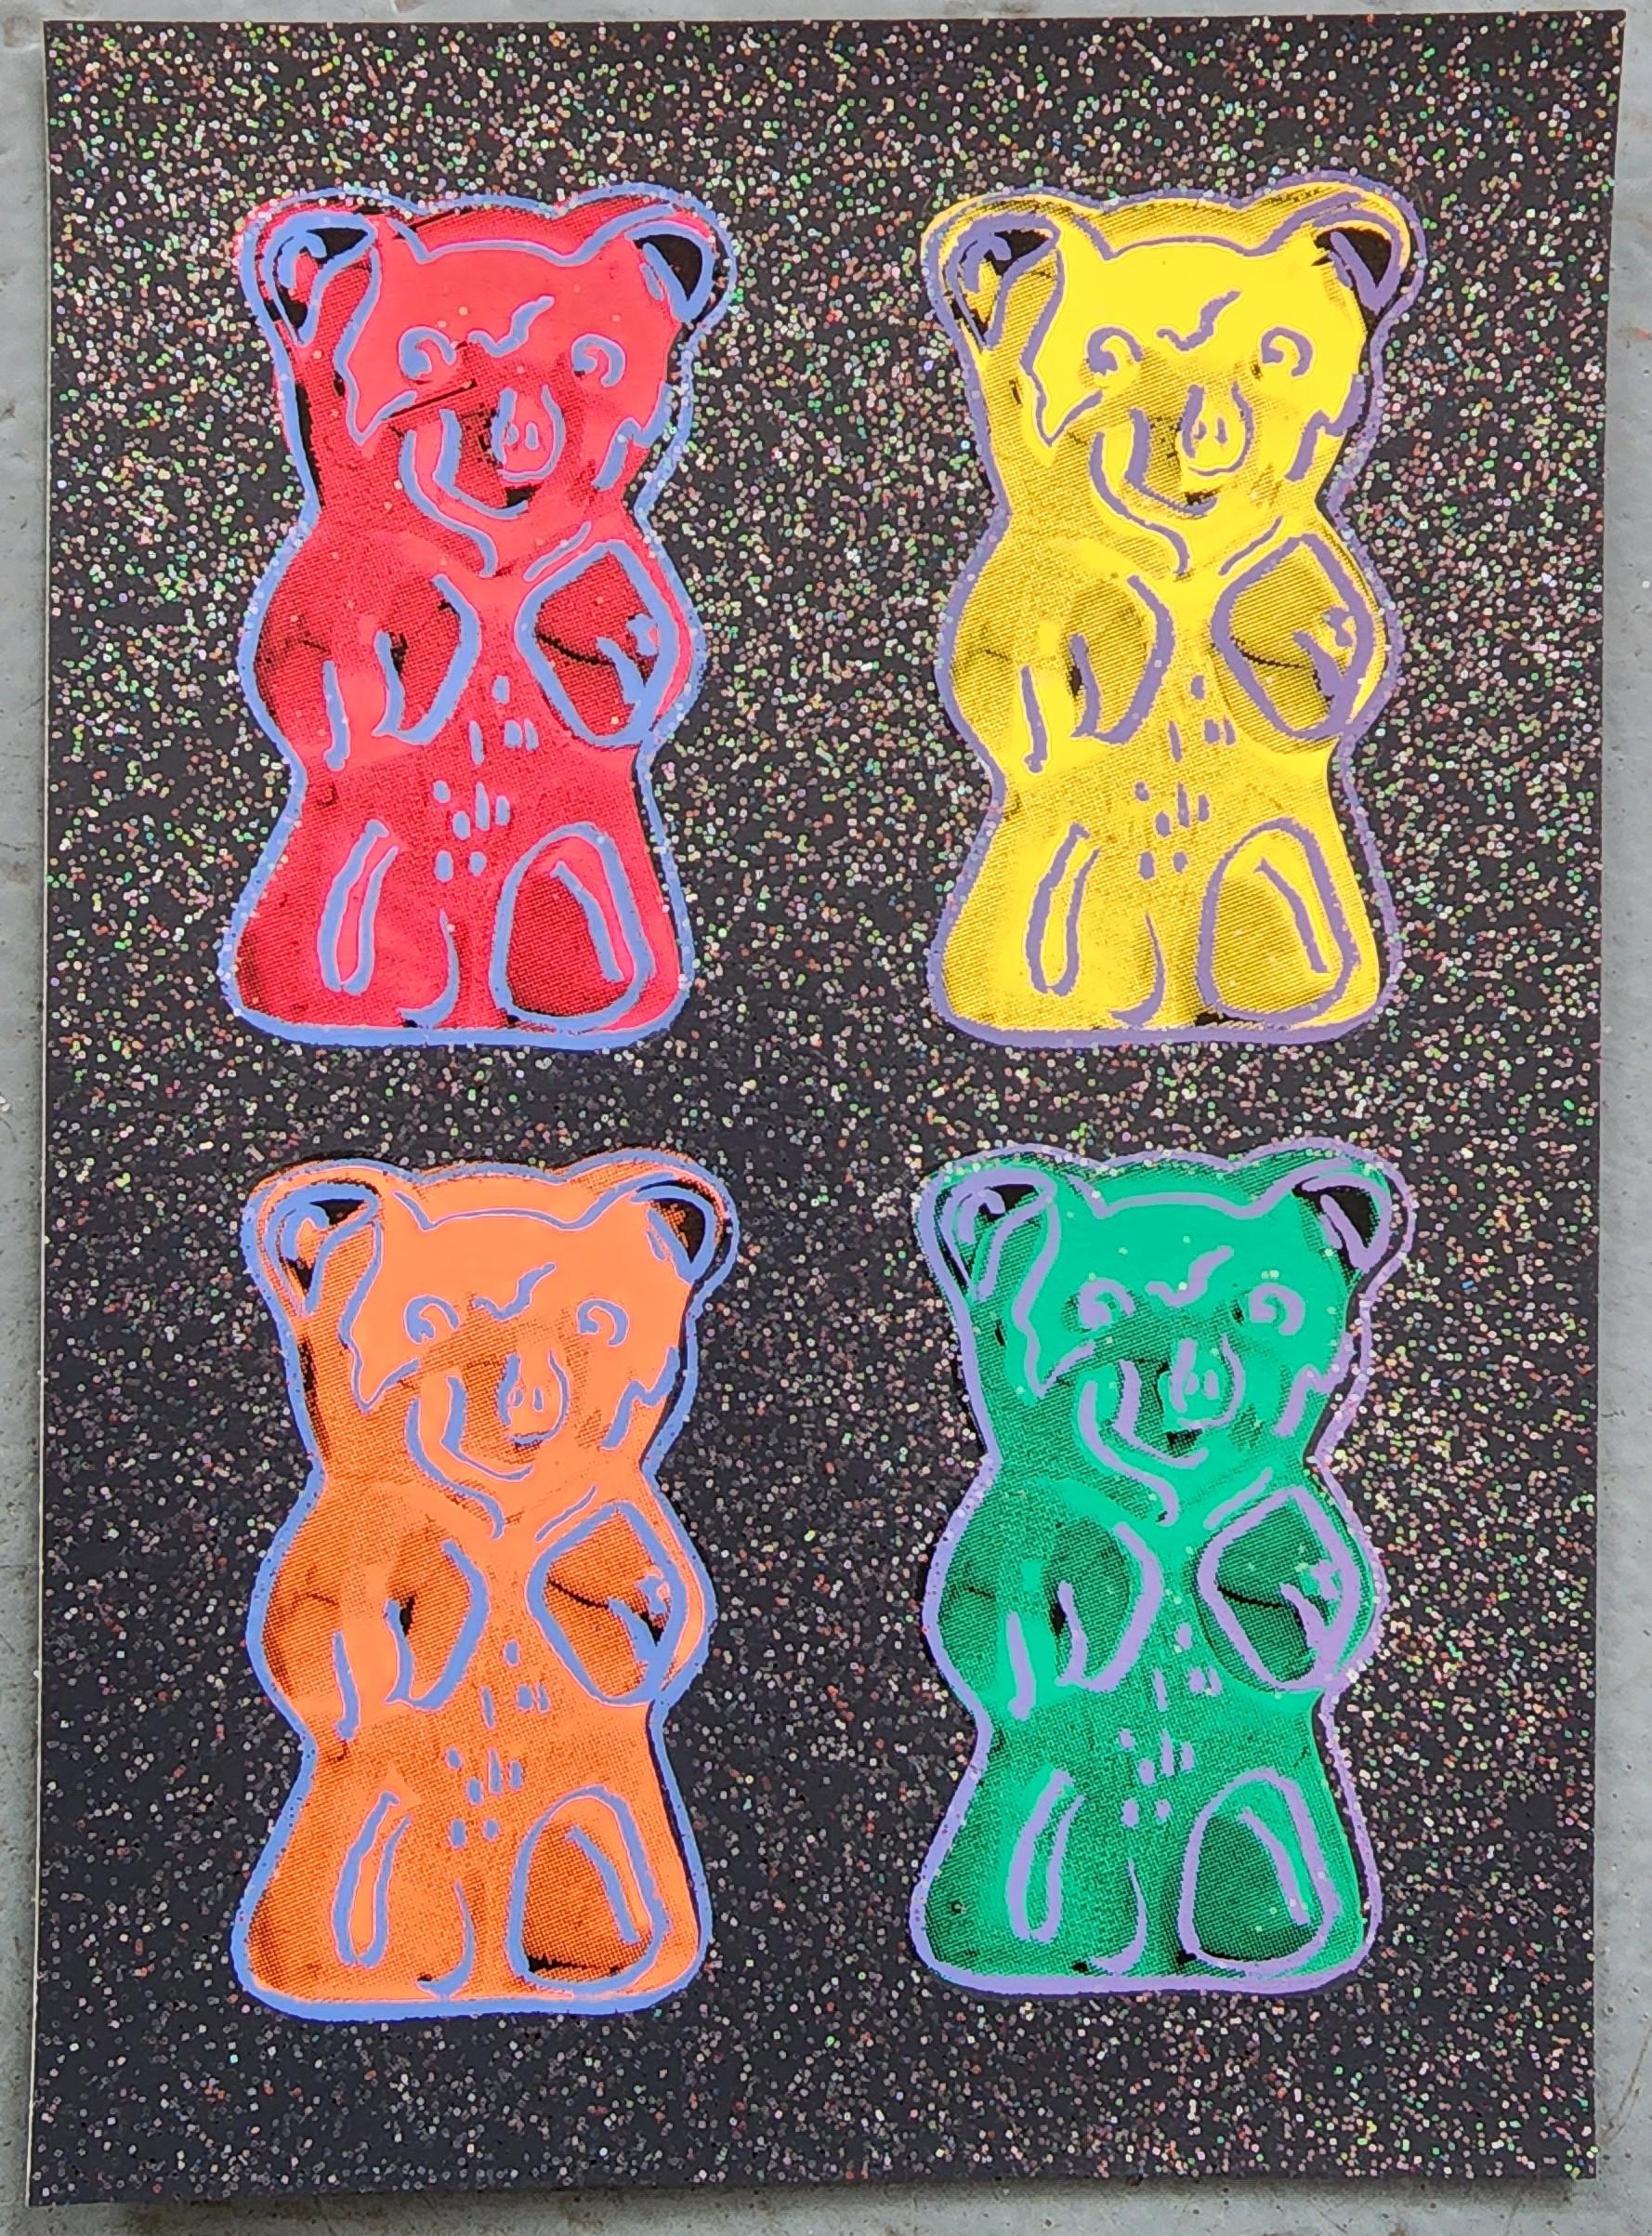 Jurgen Kuhl
Gummi Bears (Black, Gummibärchen)
Sérigraphie couleur avec paillettes
Année : années 2000
Taille : 7.4×5.3in
L'ACO a fourni
Réf. : 924802-1182

*OPTIONS D'ENCADREMENT DISPONIBLES. SE RENSEIGNER DANS LES LIMITES DE L'UNION EUROPÉENNE


À